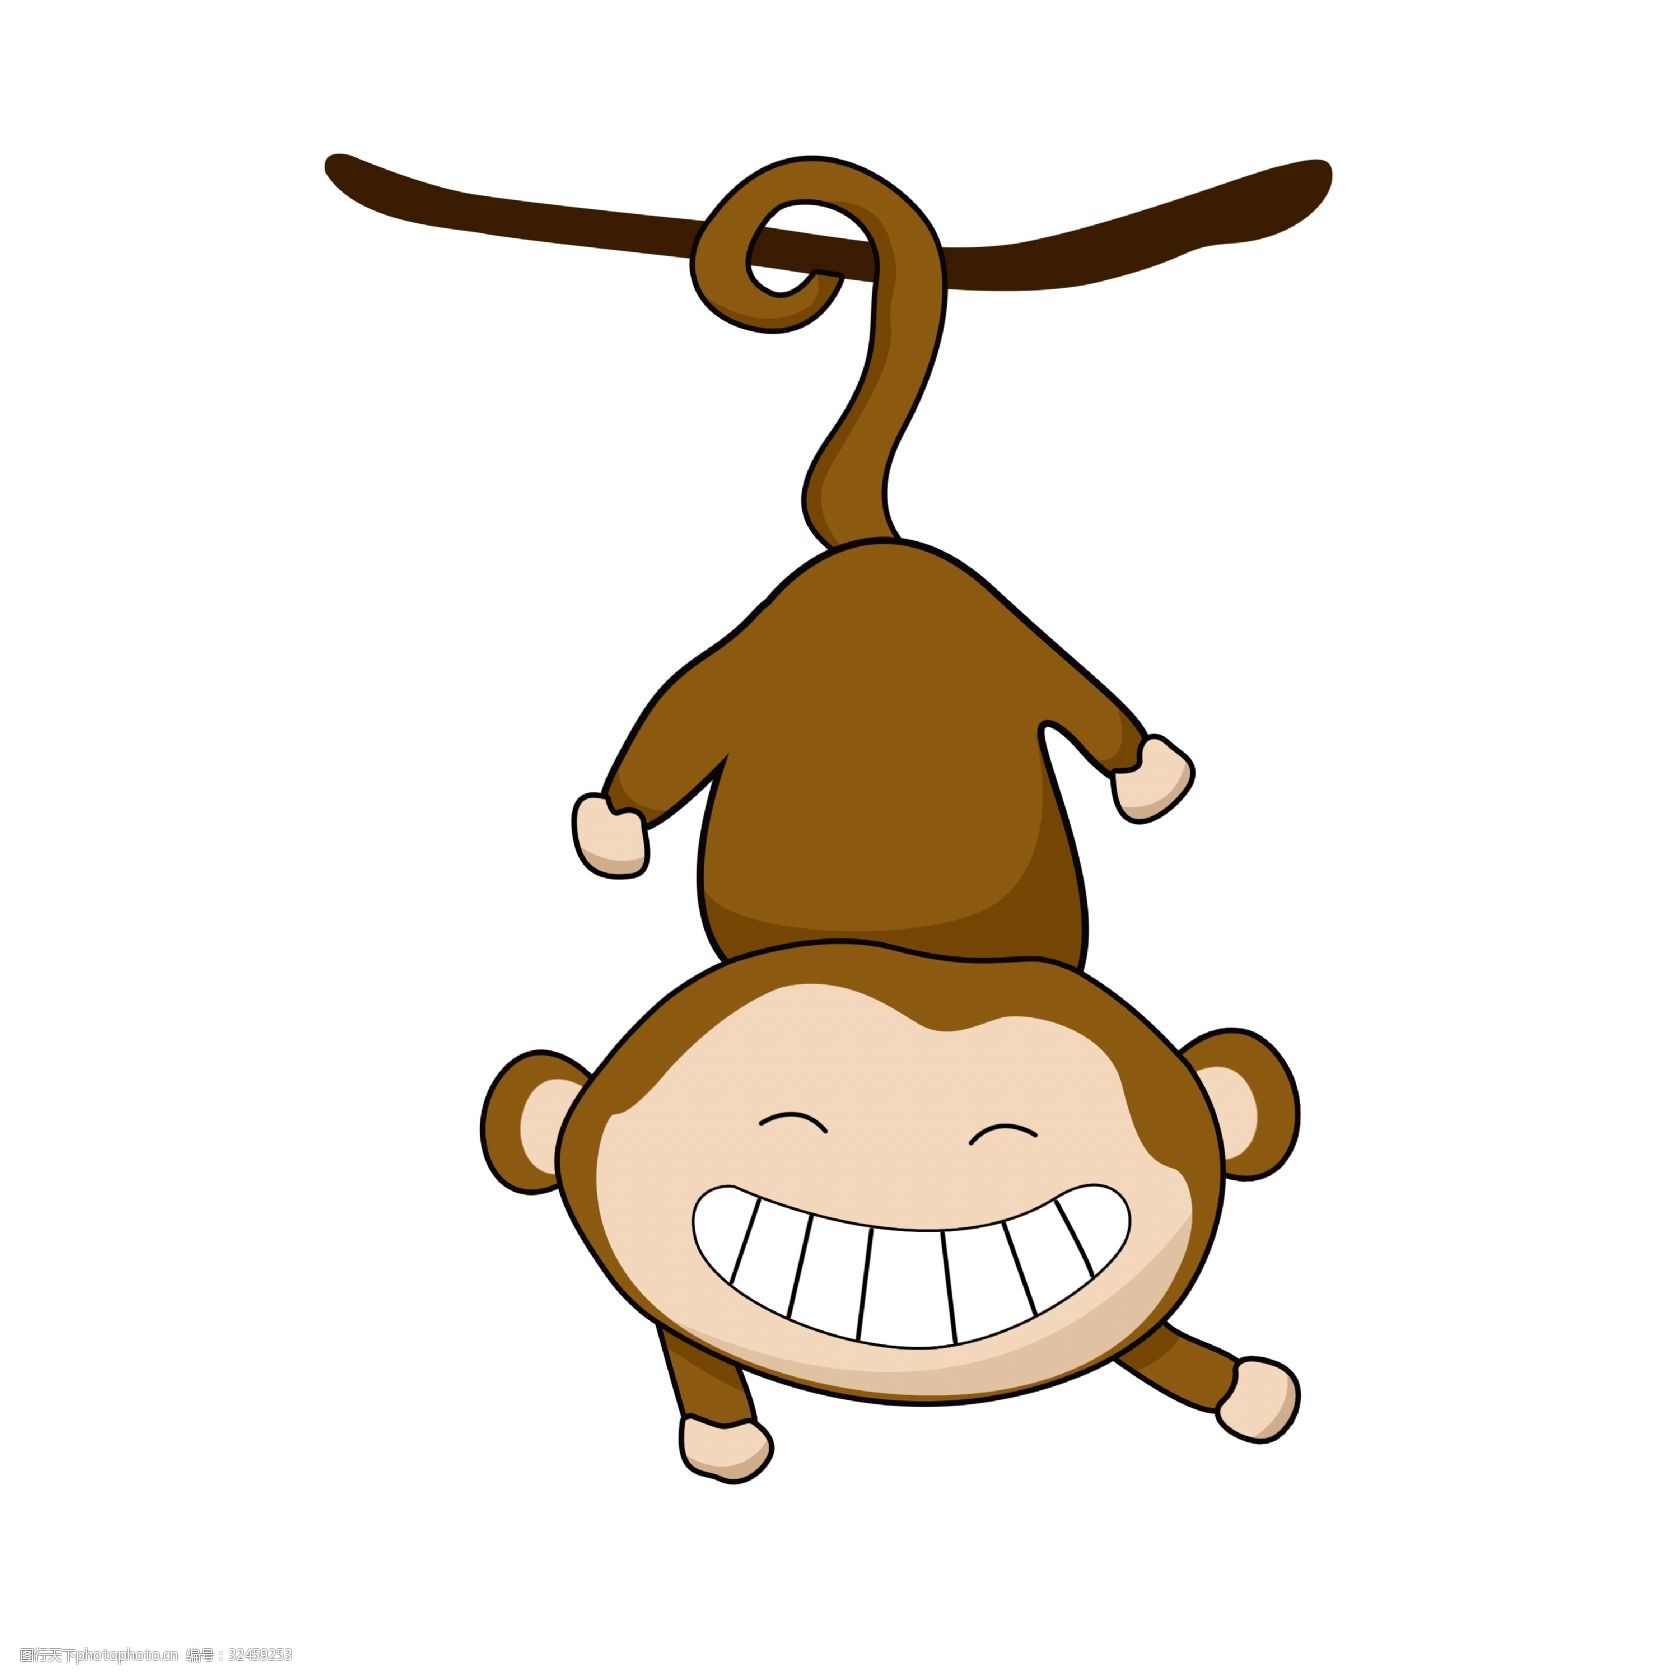 关键词:开心的小猴子插画 开心的小猴子 卡通小动物 棕色小猴子 挂